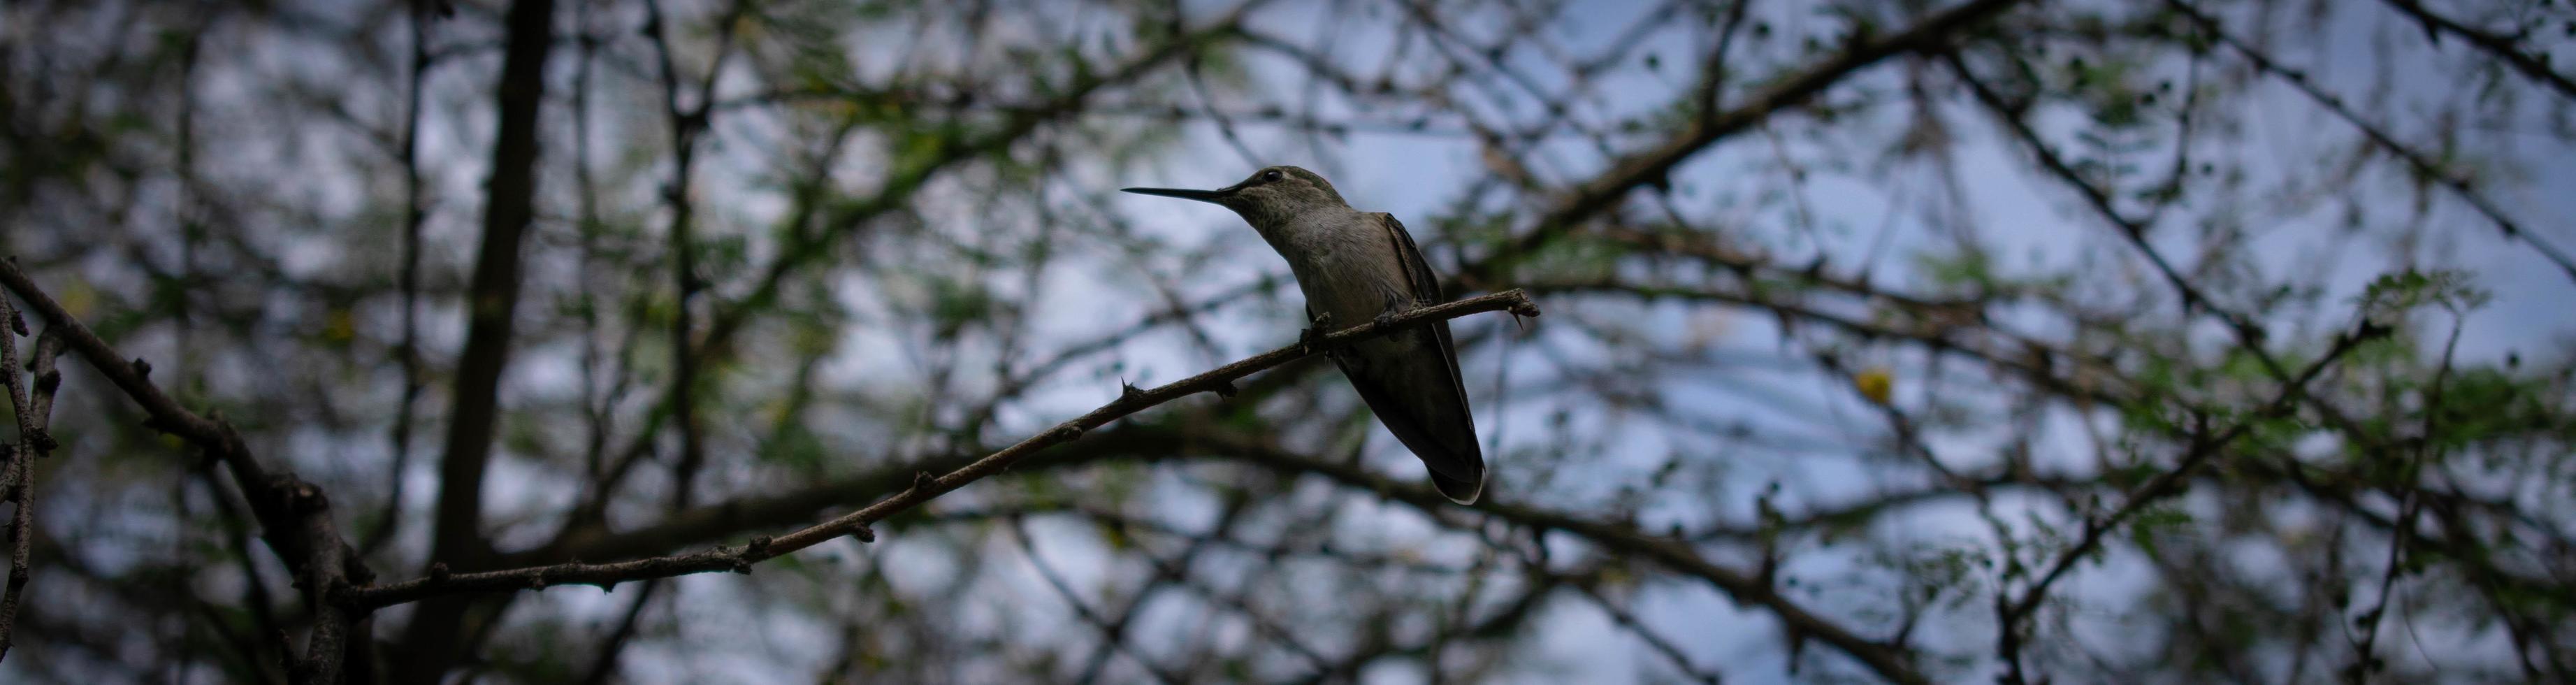 colibrì che si appollaia su un albero foto